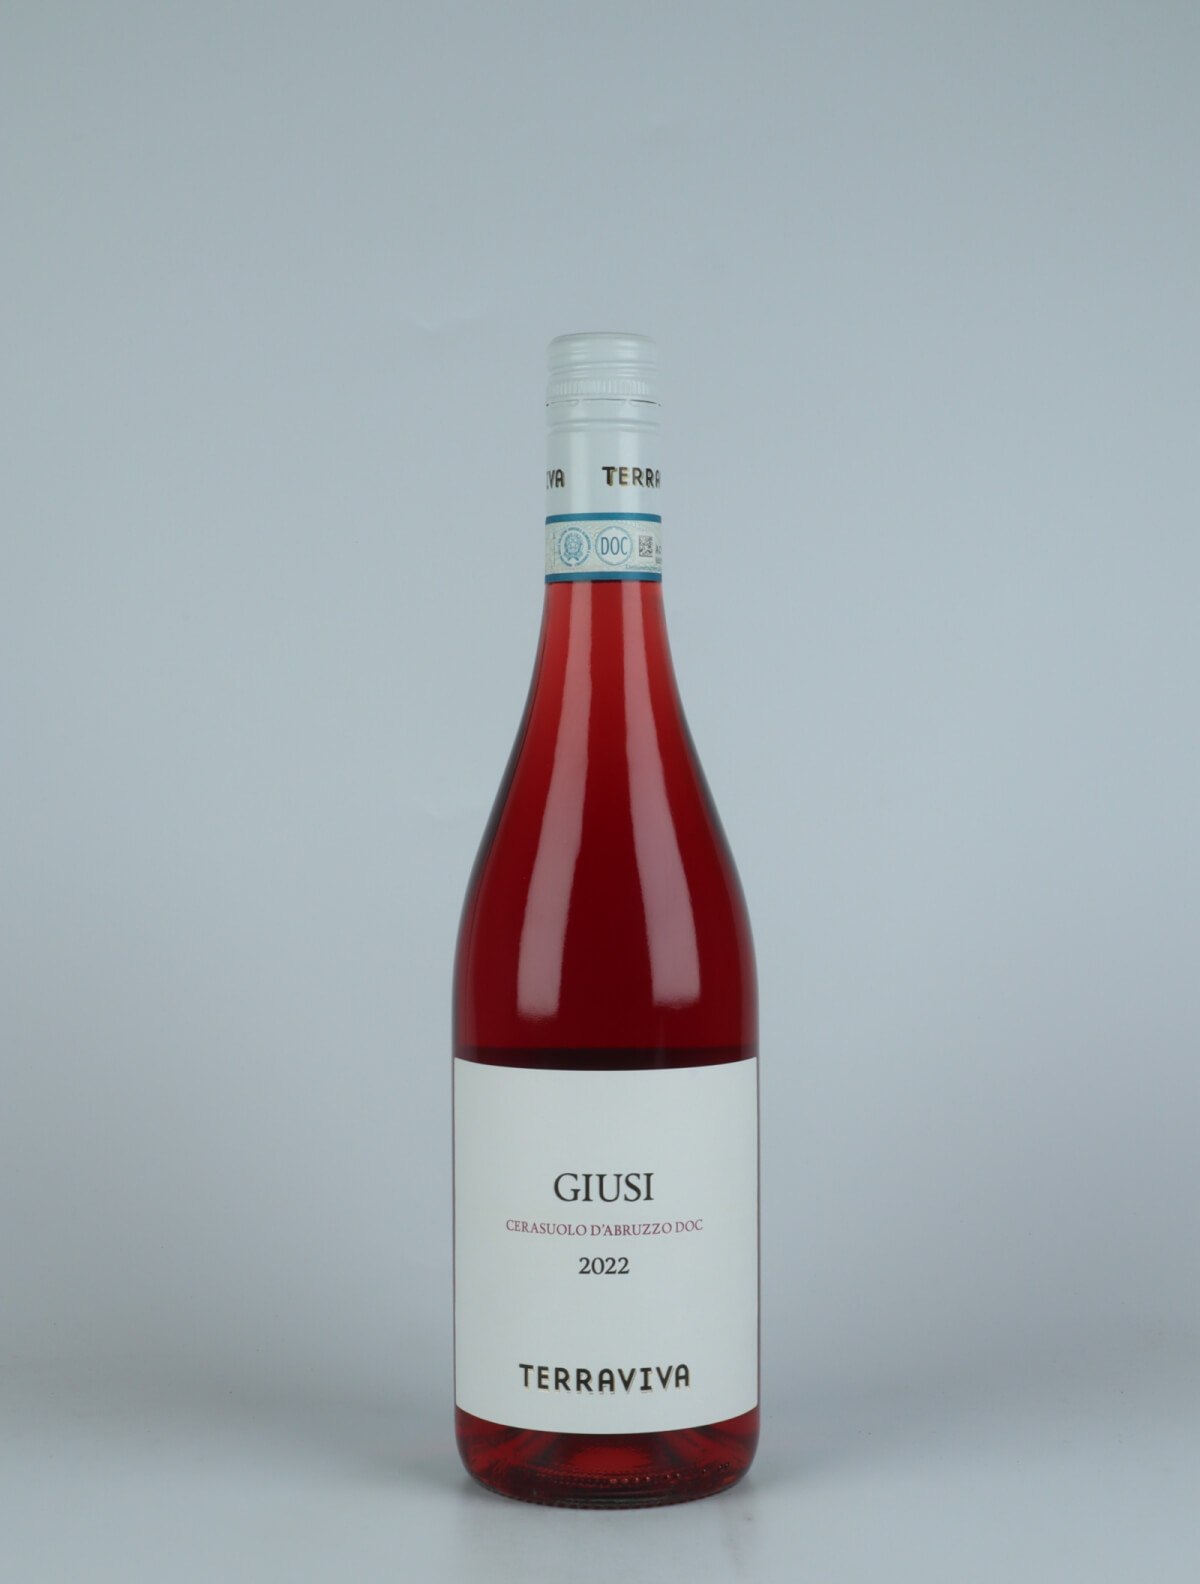 A bottle 2022 Giusi - Rosé Rosé from Tenuta Terraviva, Abruzzo in Italy